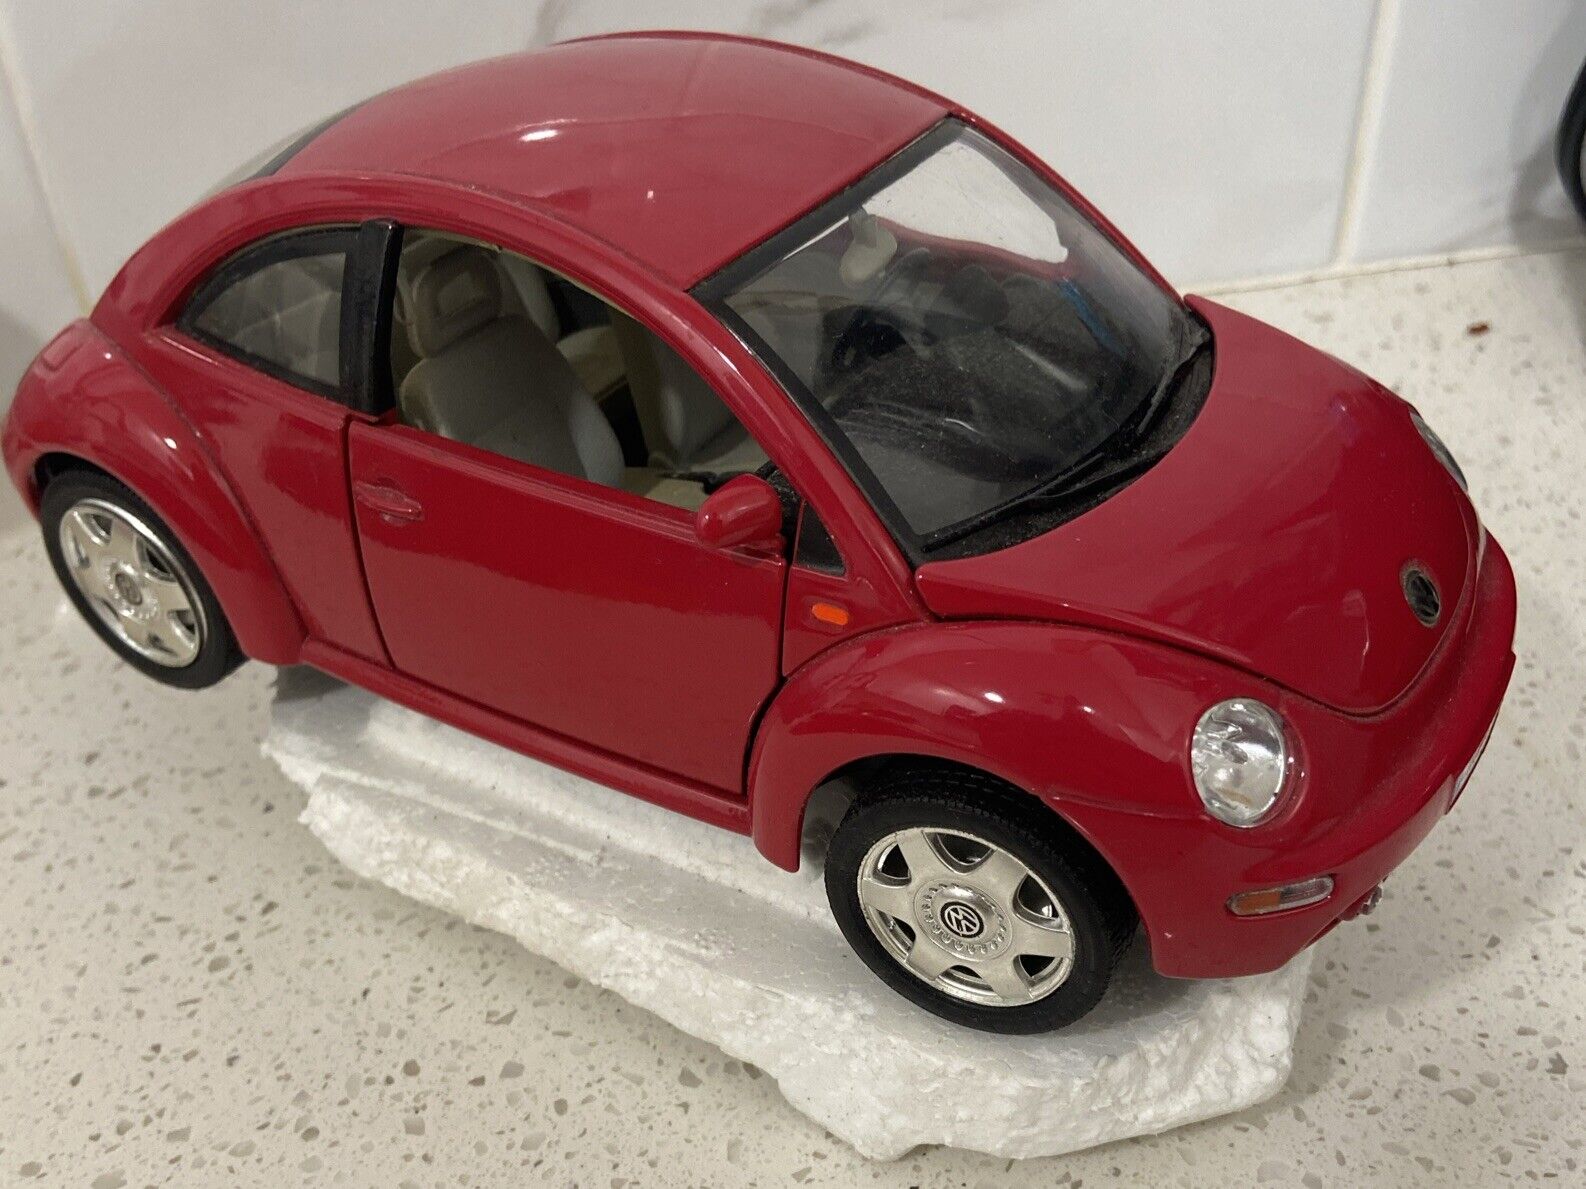 1998 Volkswagen New Beetle 1/18 Diecast Car, Red, by Bburago